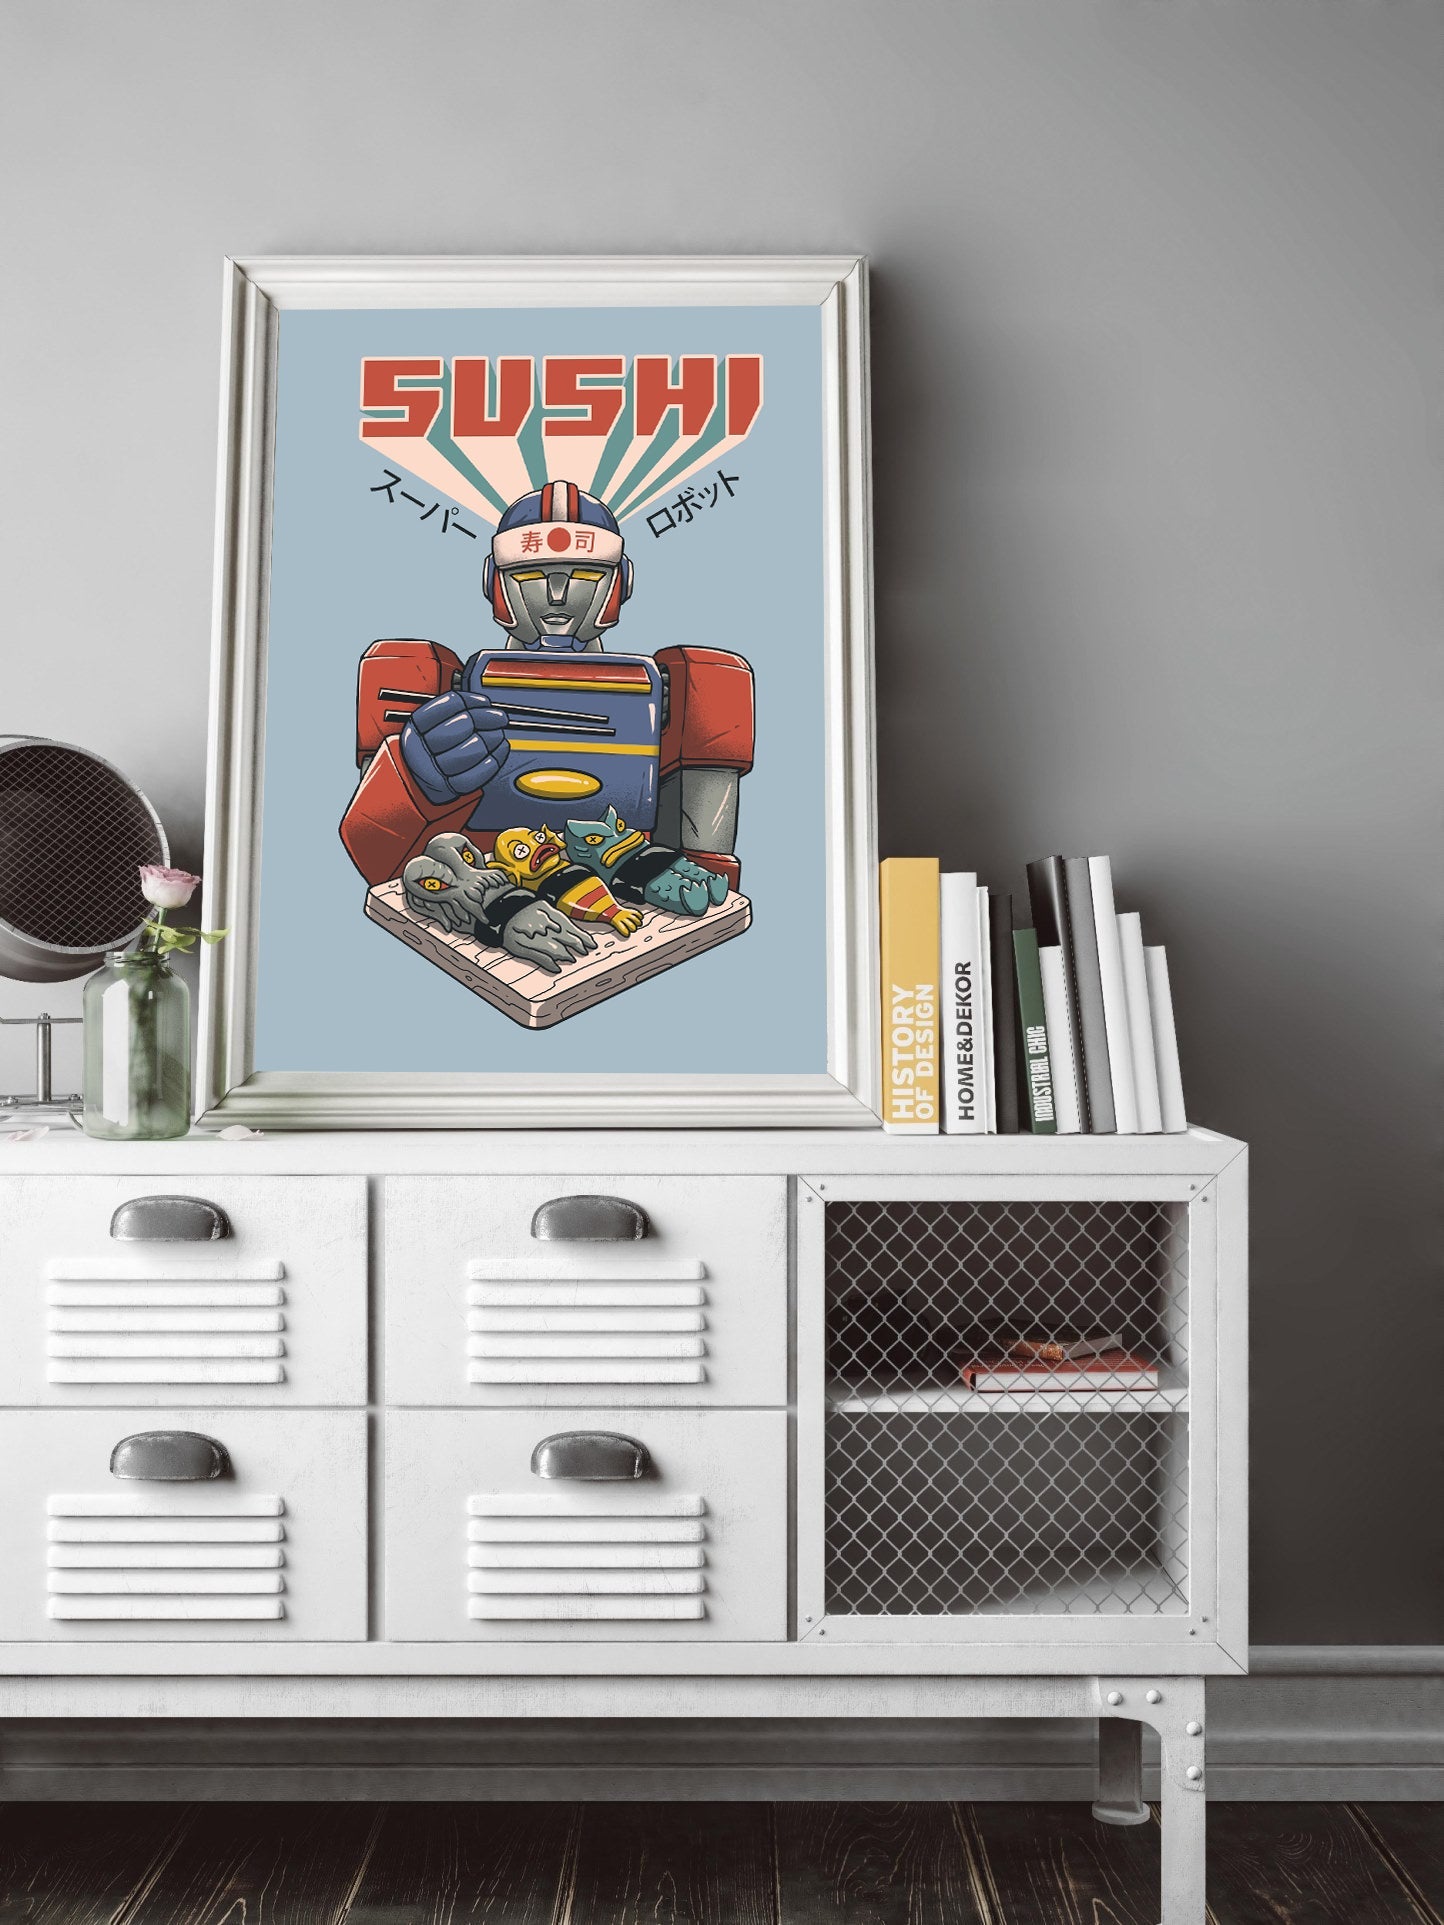 Super Sushi Robot-print, vincent-trinidad-BLUE SHAKER